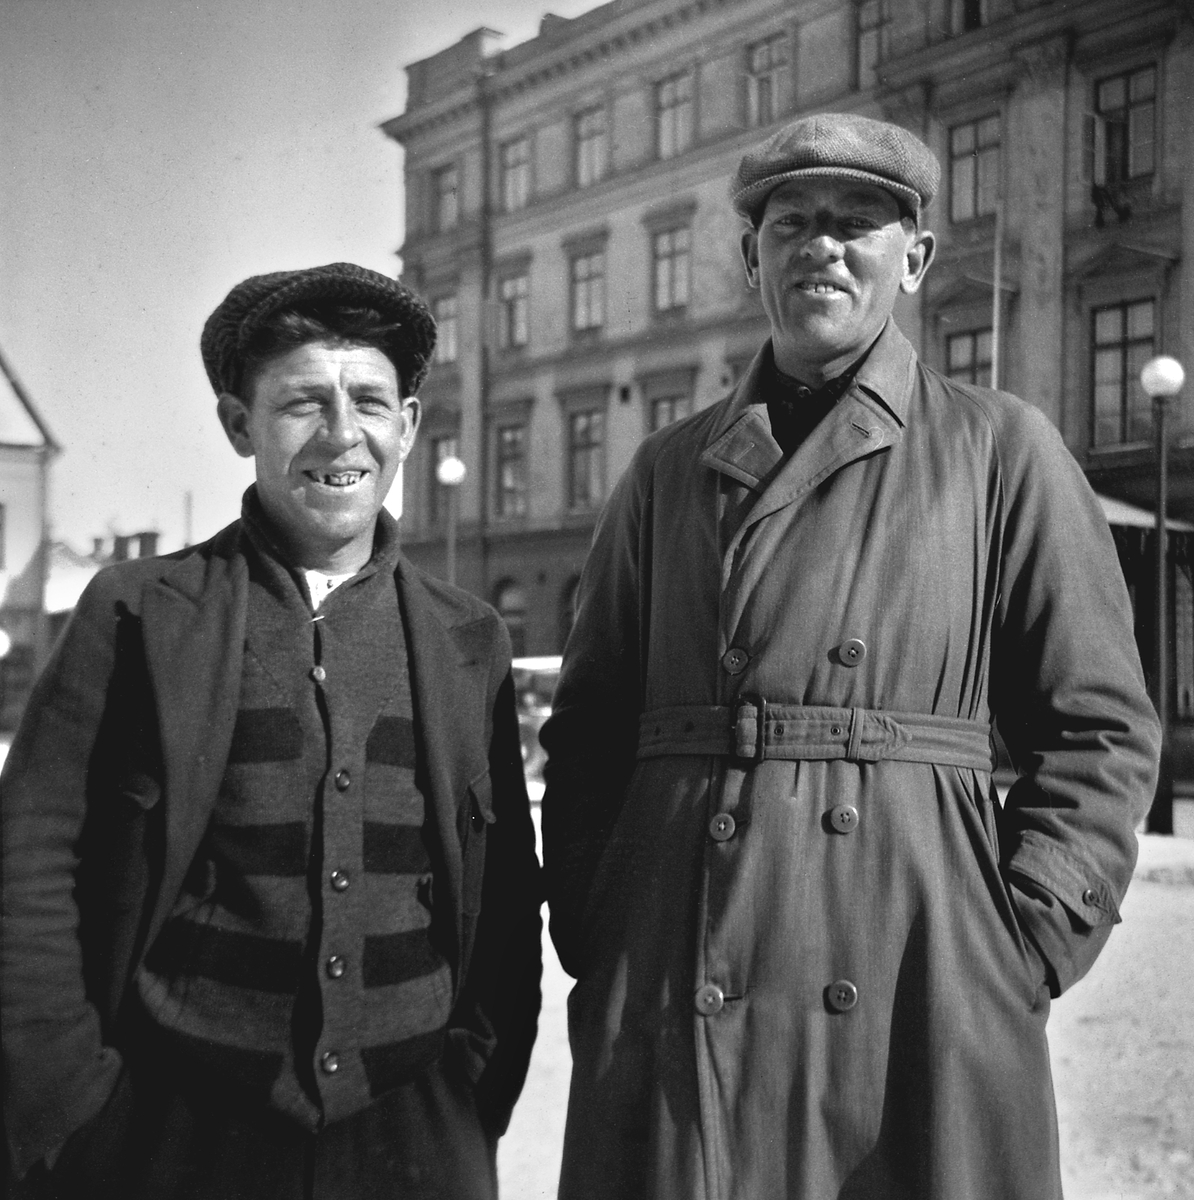 Diversearbetare fotograferade på Stora torget i Linköping en vinterdag på 1930-talet. Herrarnas identiteter har inte klargjorts.